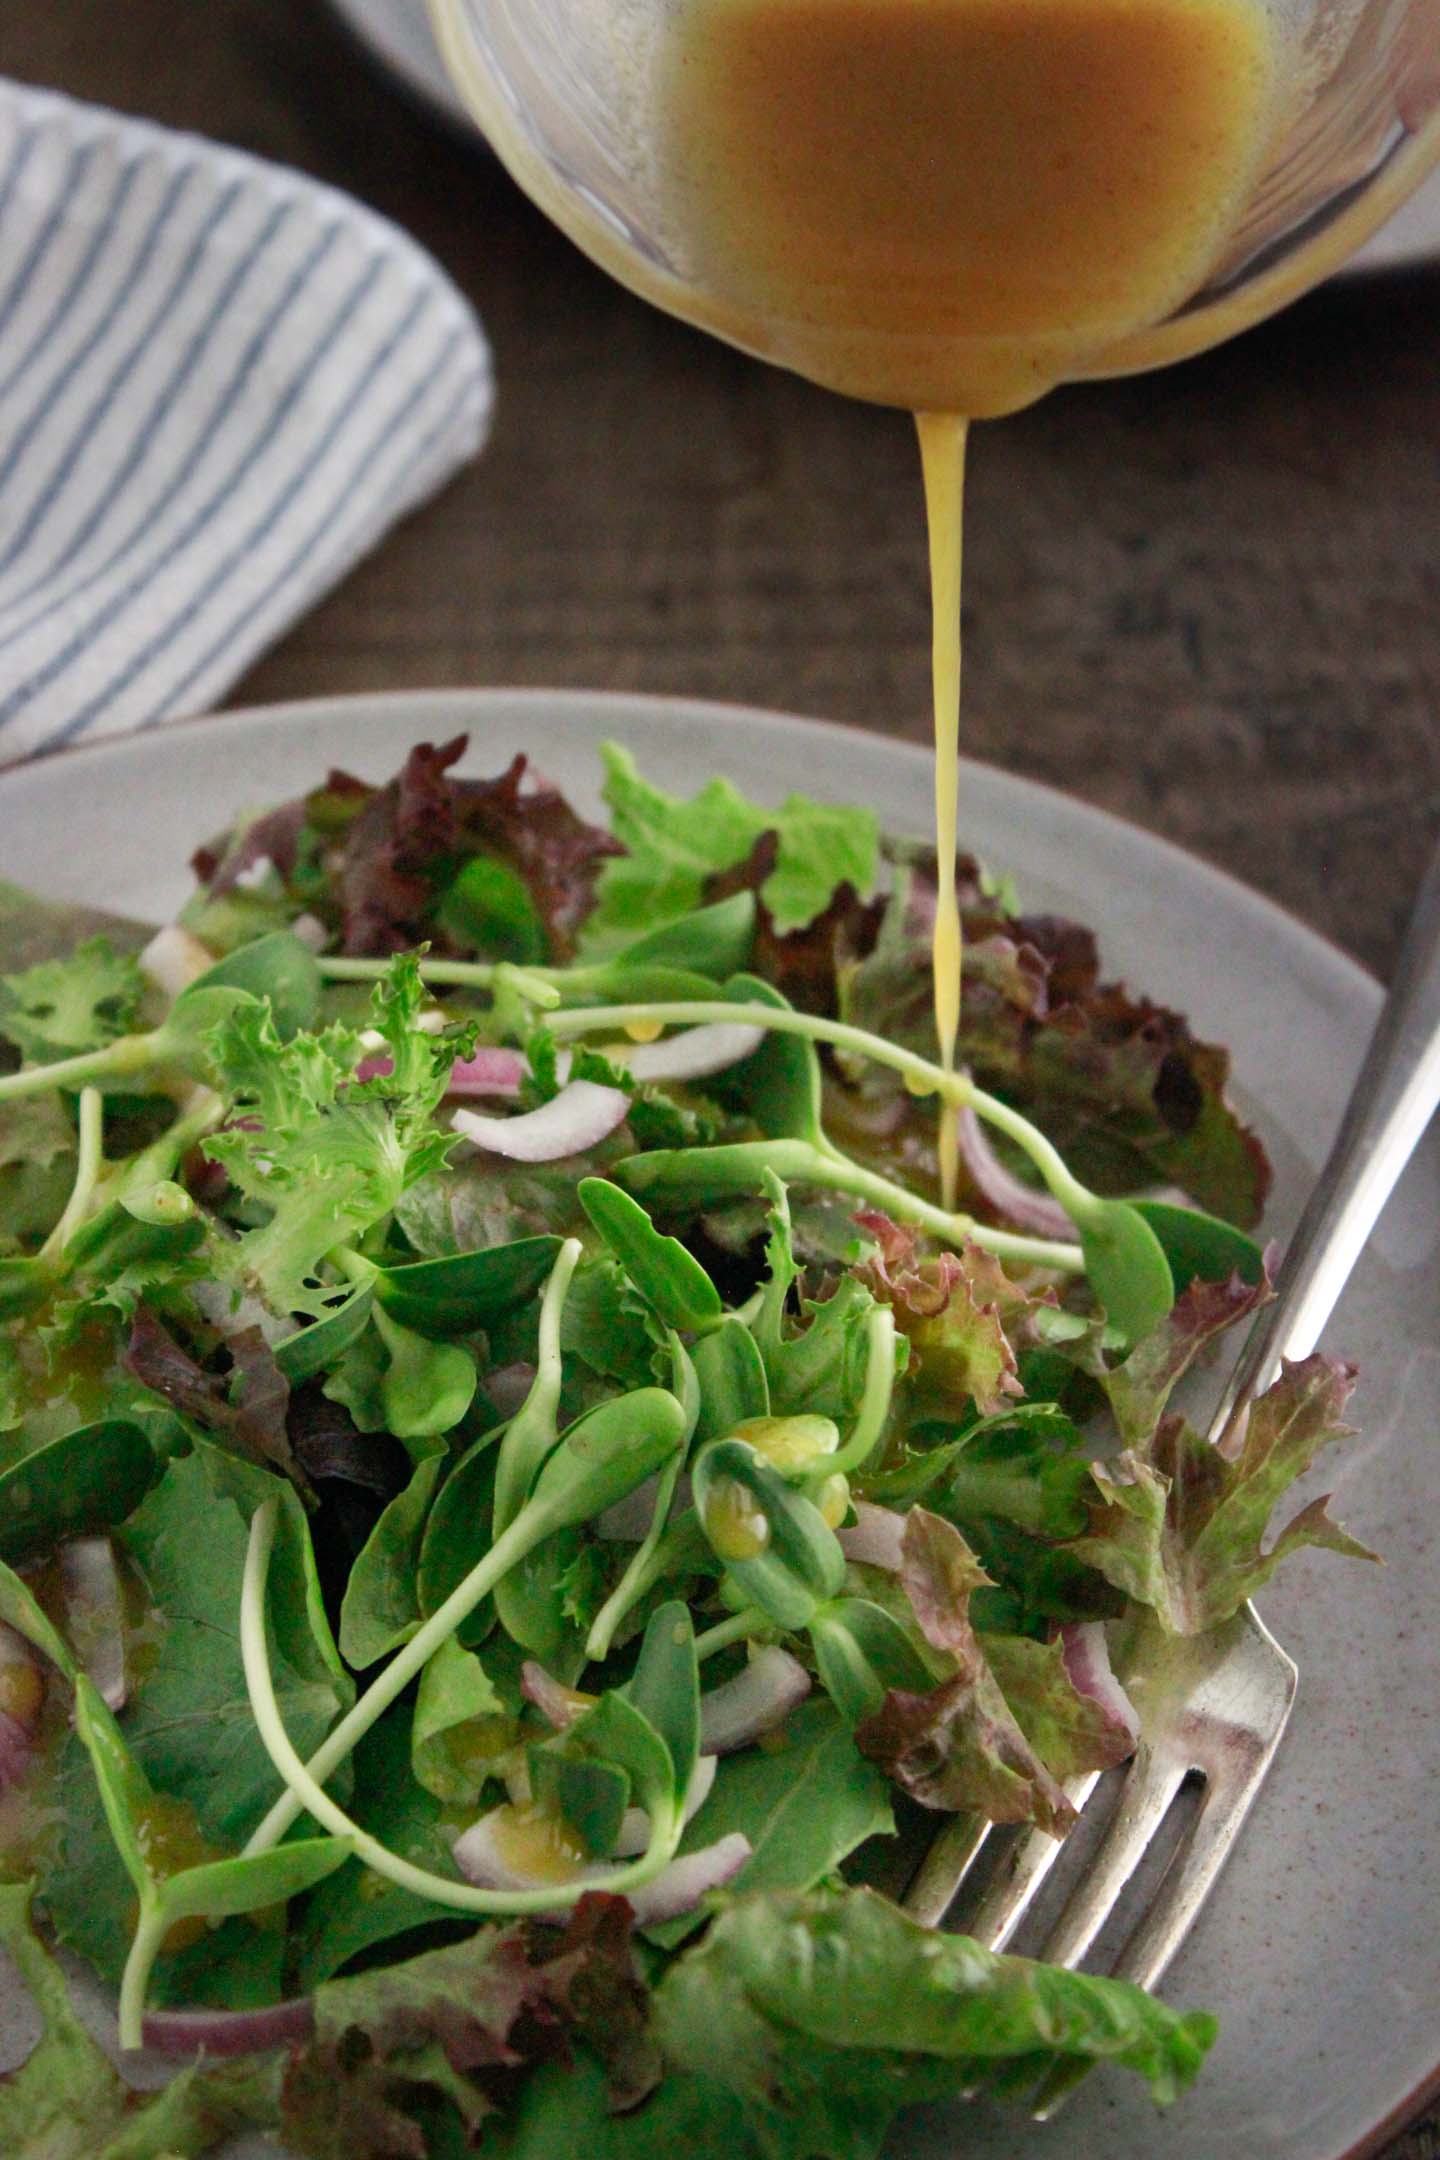 Drizzling vinaigrette over the baby lettuce salad